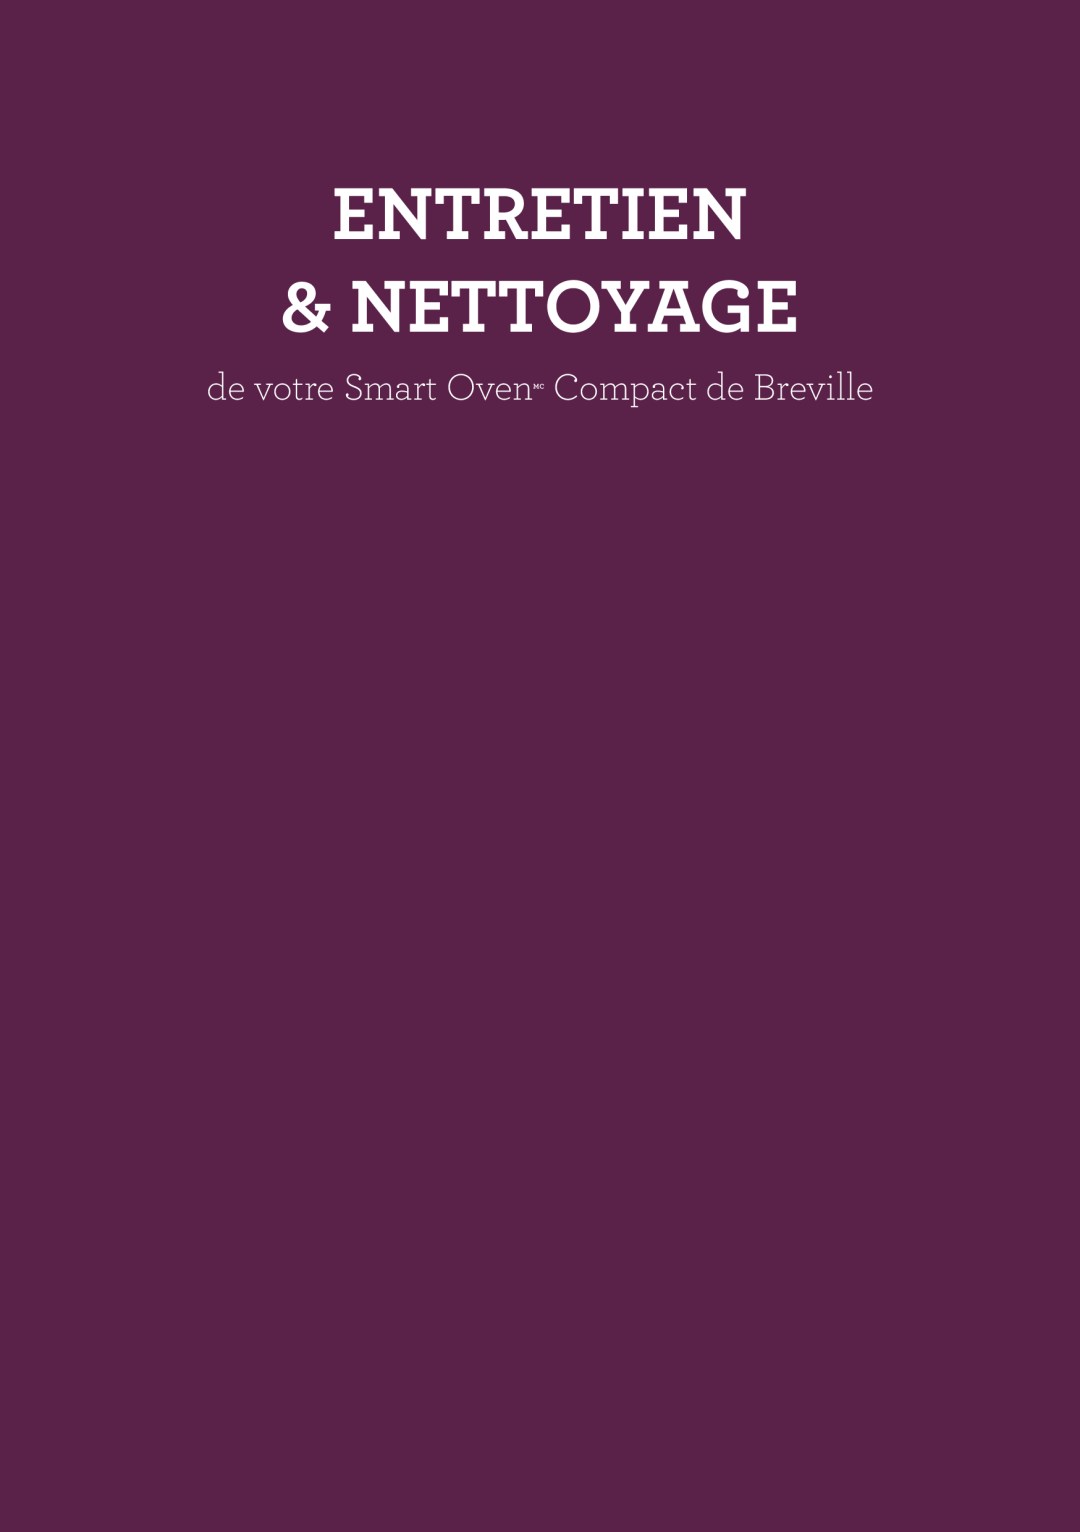 Breville Breville Compact Smart Oven manual Entretien & Nettoyage, de votre Smart OvenMC Compact de Breville 